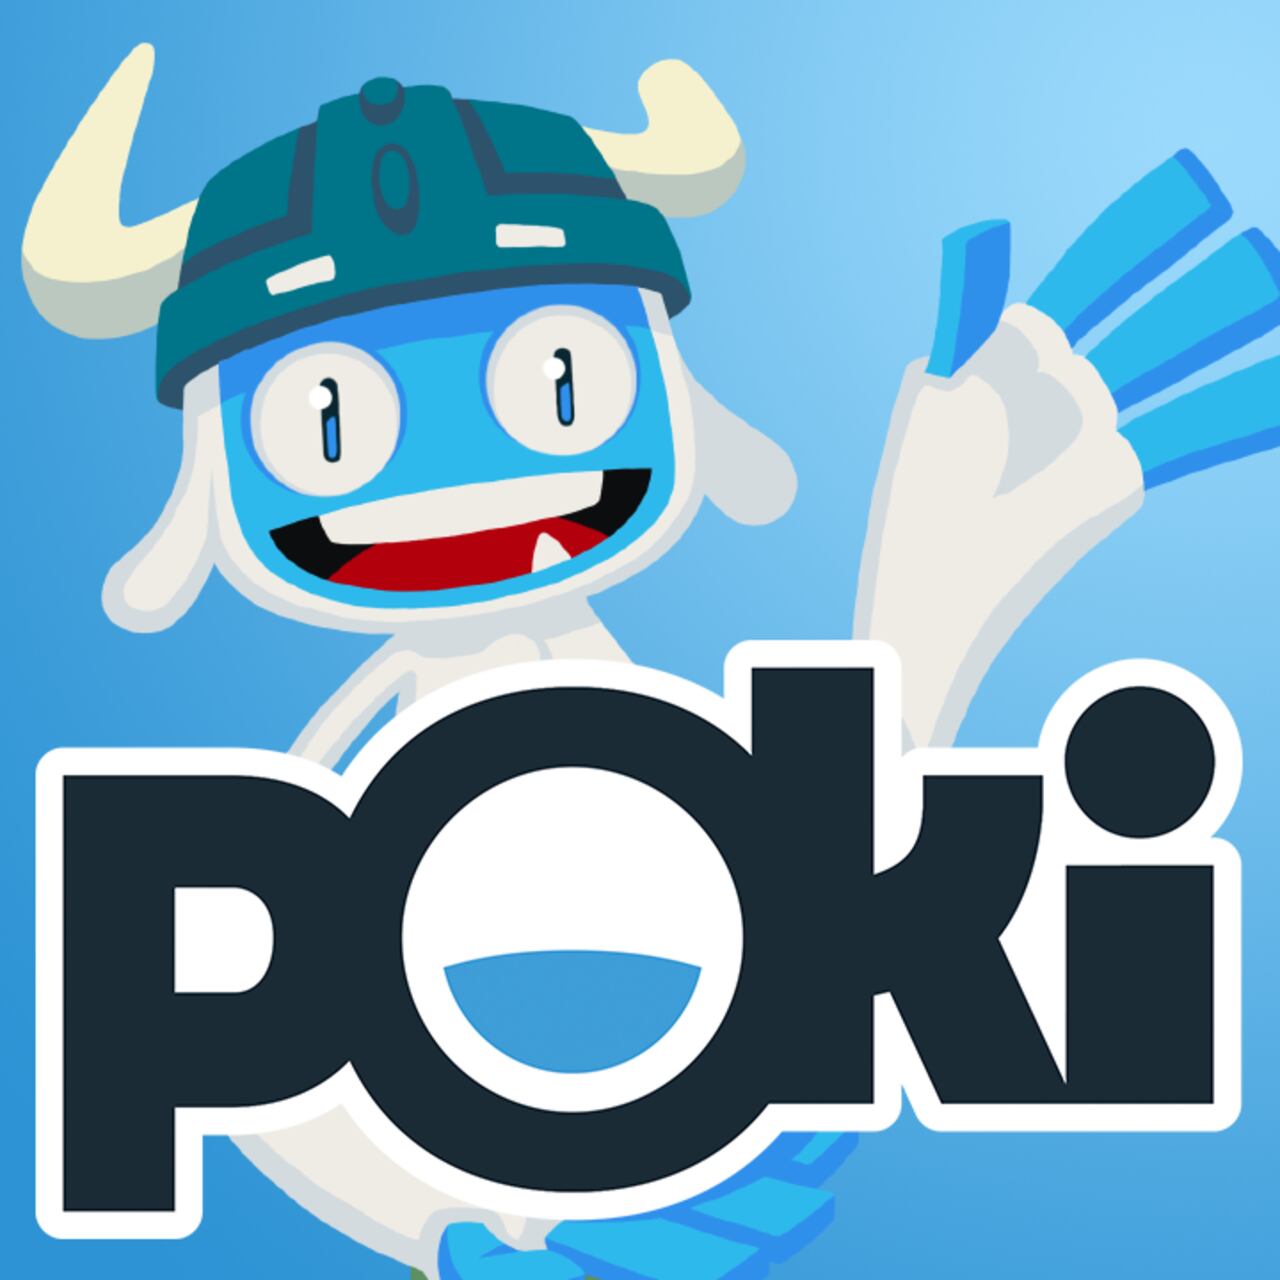 ¿Quiere explorar nuevos mundos desde la comodidad de su hogar? Poki le lleva a lugares fantásticos a través de sus juegos de exploración y aventura.